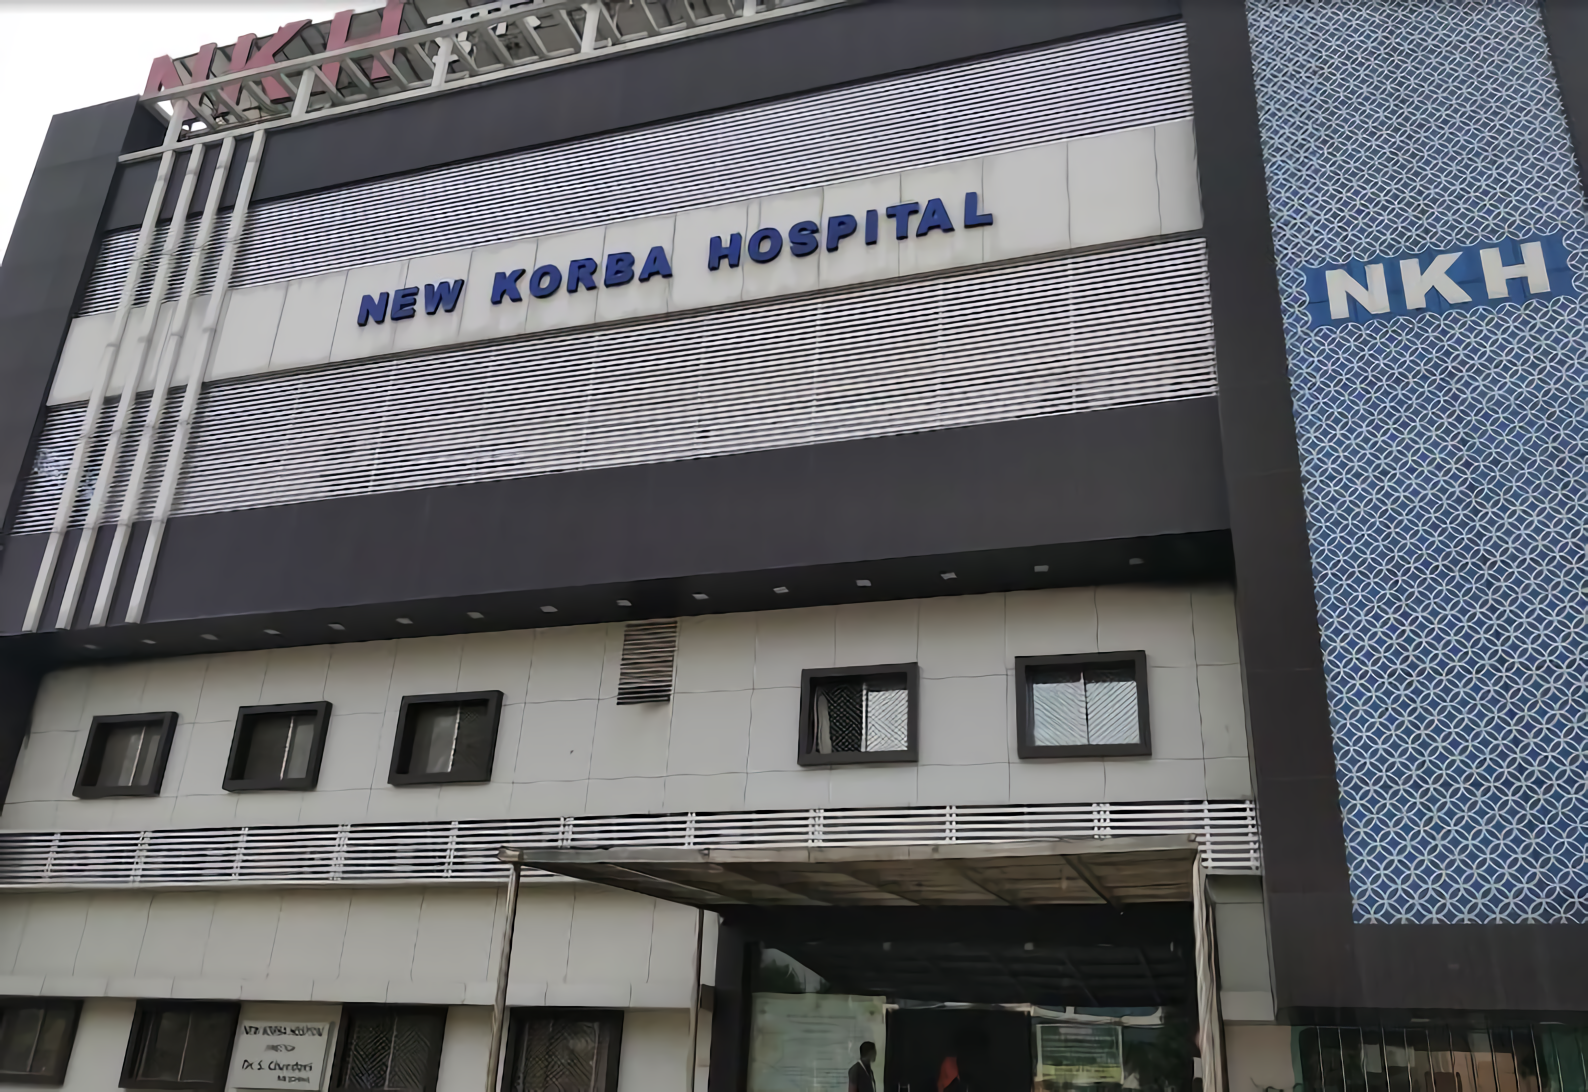 New Korba Hospital